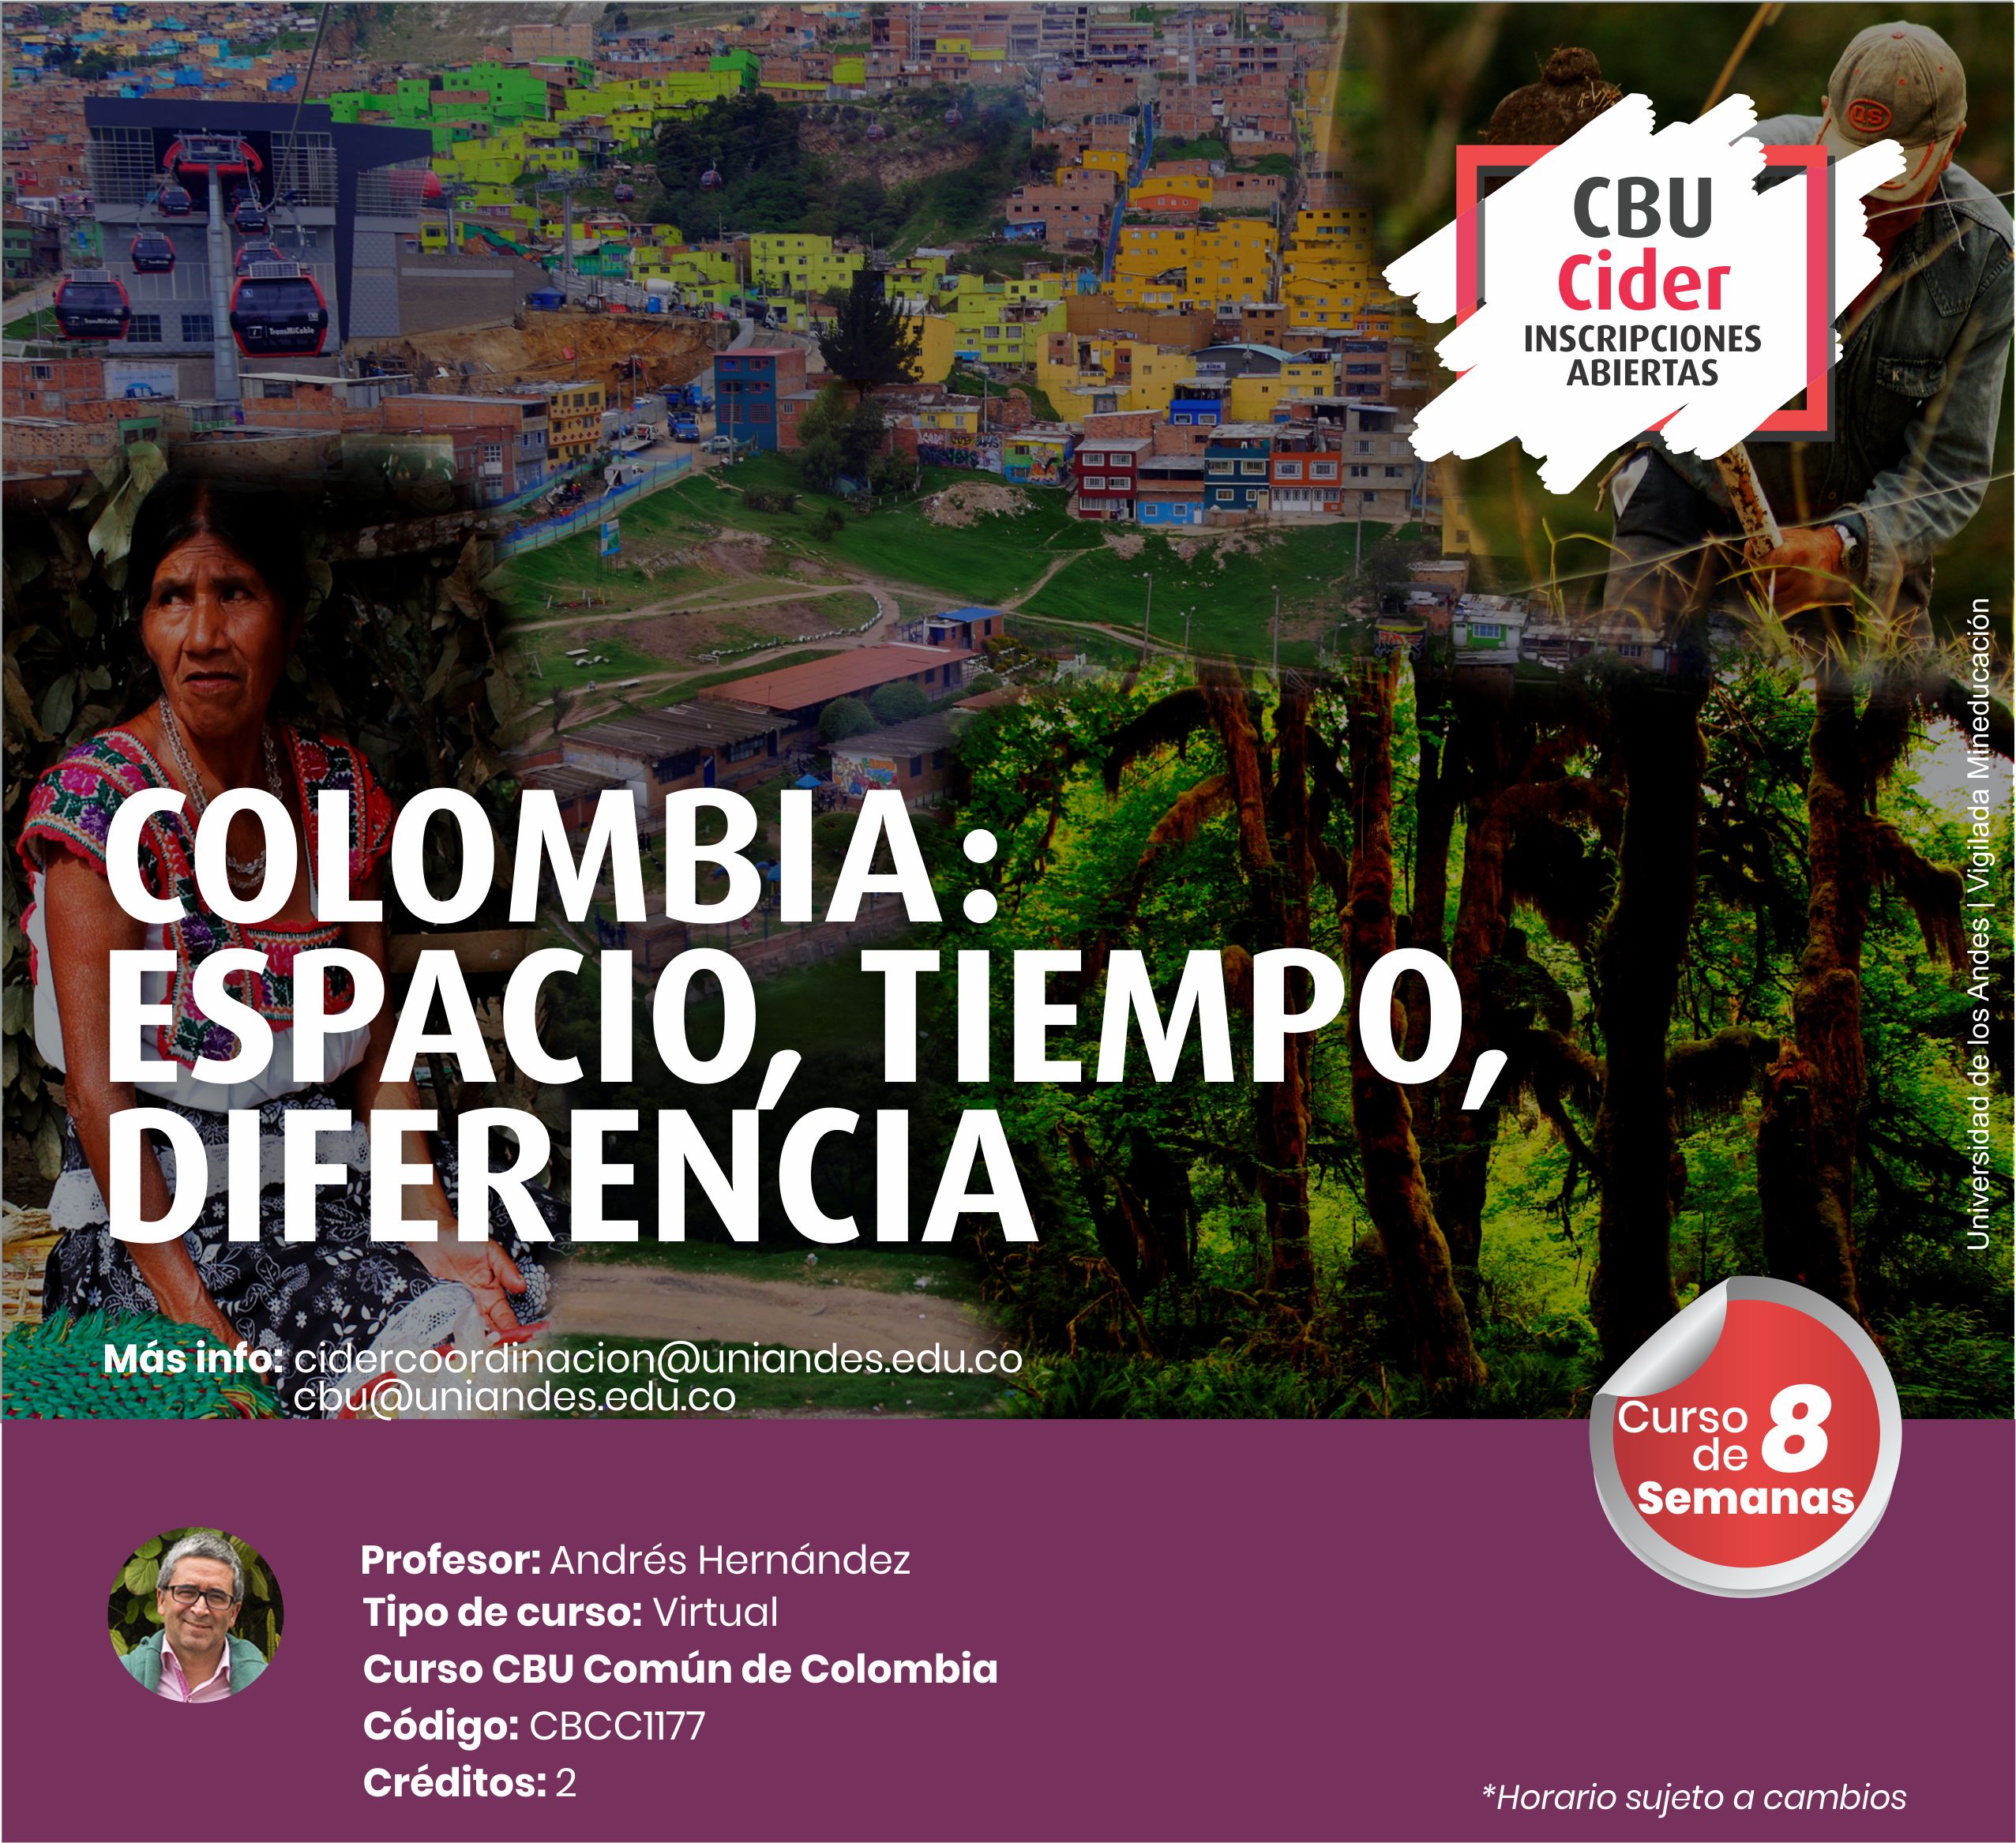 CBU: Colombia: espacio, tiempo diferencia - Cider | Uniandes